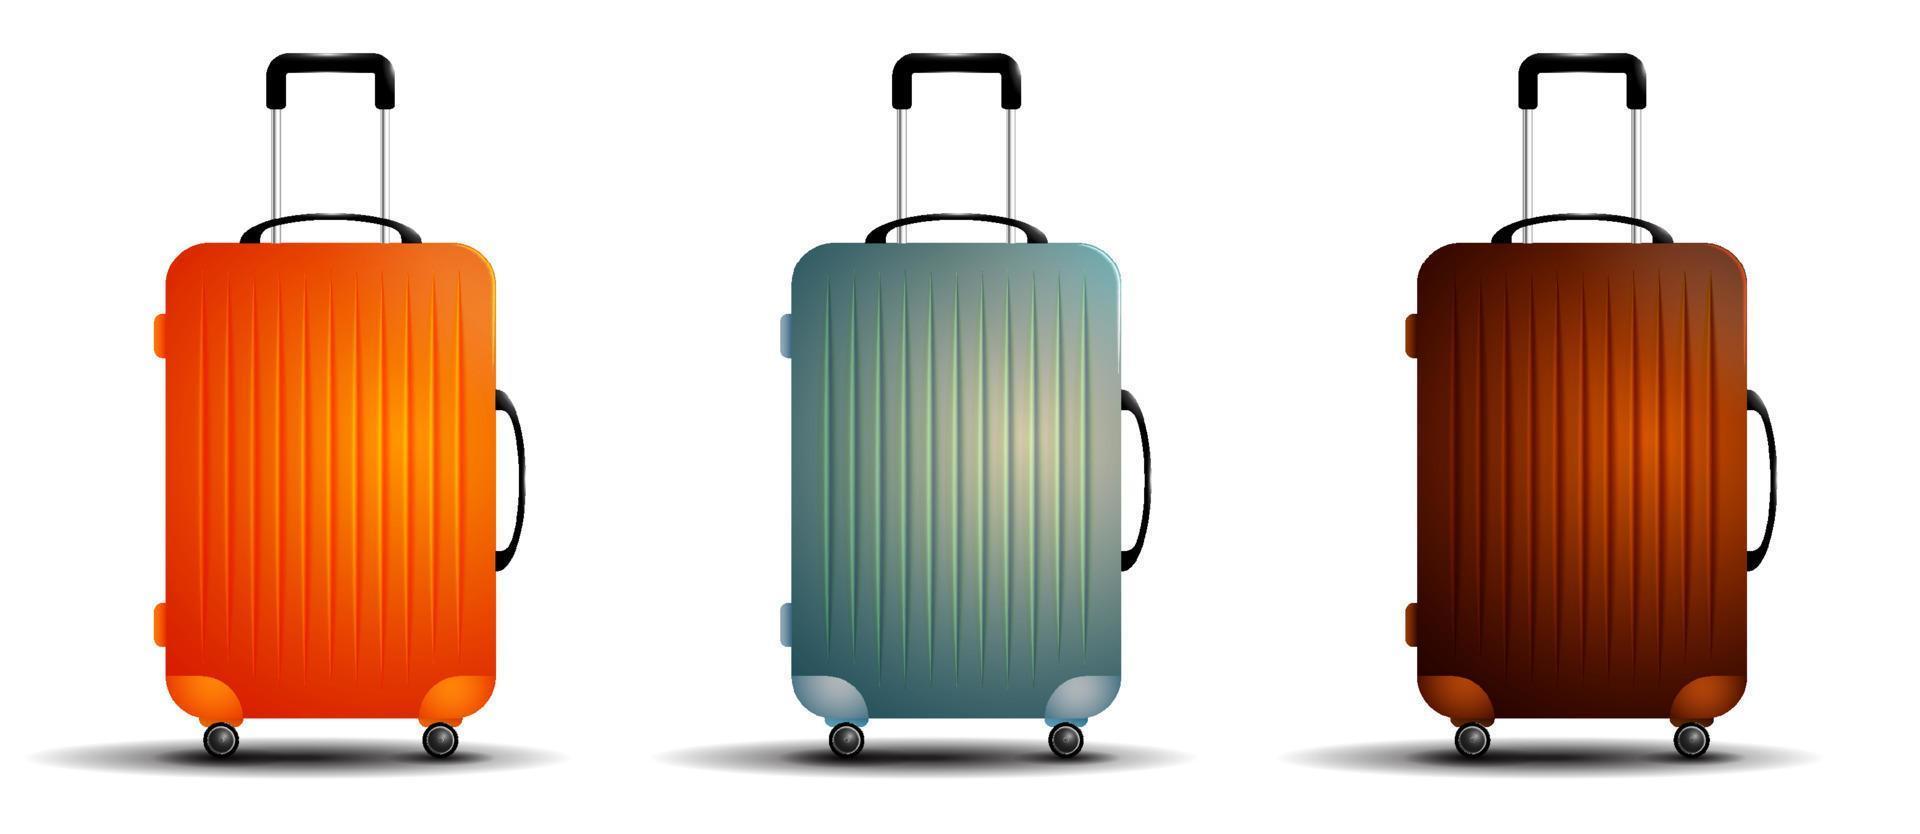 farbige reisetasche. Koffer für Gepäck auf Rädern. Transport von Sachen während des Urlaubs. realistischer Vektor